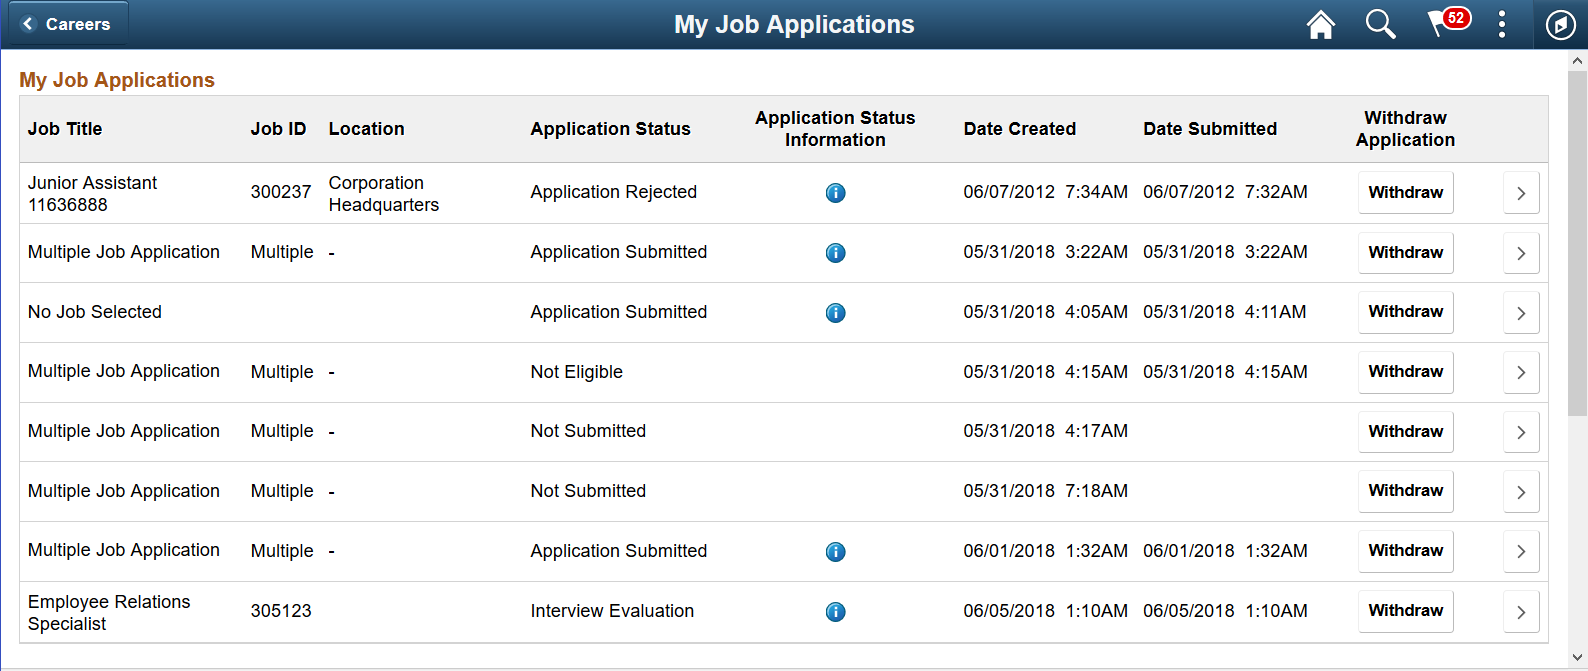 My Job Application Page - Desktop view